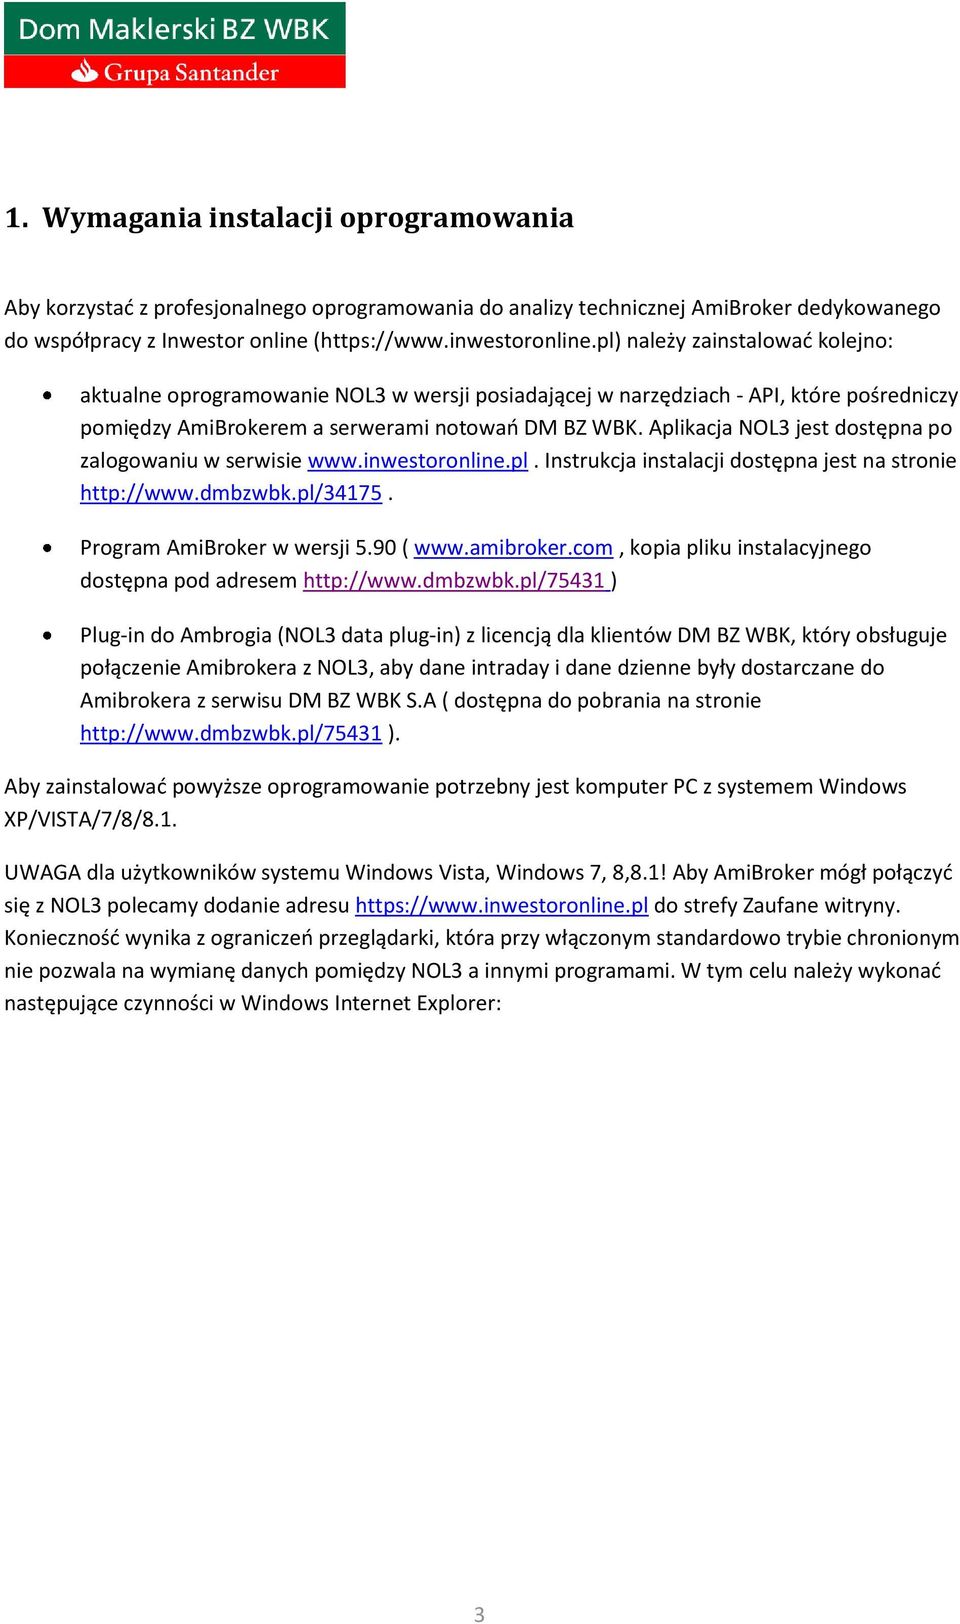 Aplikacja NOL3 jest dostępna po zalogowaniu w serwisie www.inwestoronline.pl. Instrukcja instalacji dostępna jest na stronie http://www.dmbzwbk.pl/34175. Program AmiBroker w wersji 5.90 ( www.